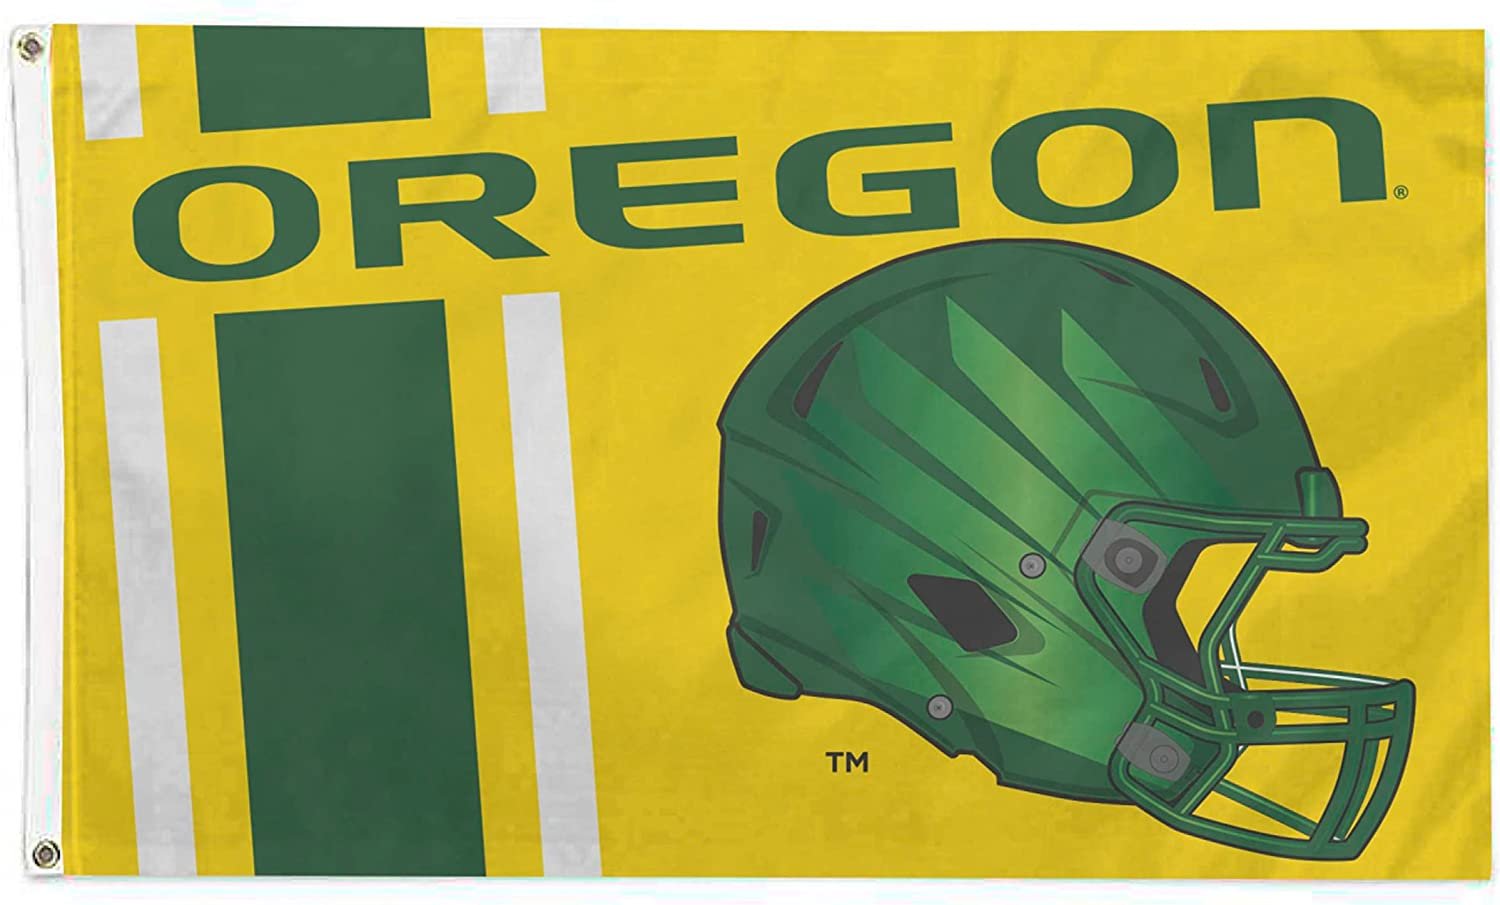 University of Oregon Ducks Flag Banner 3x5 Feet Metal Grommets Helmet Design